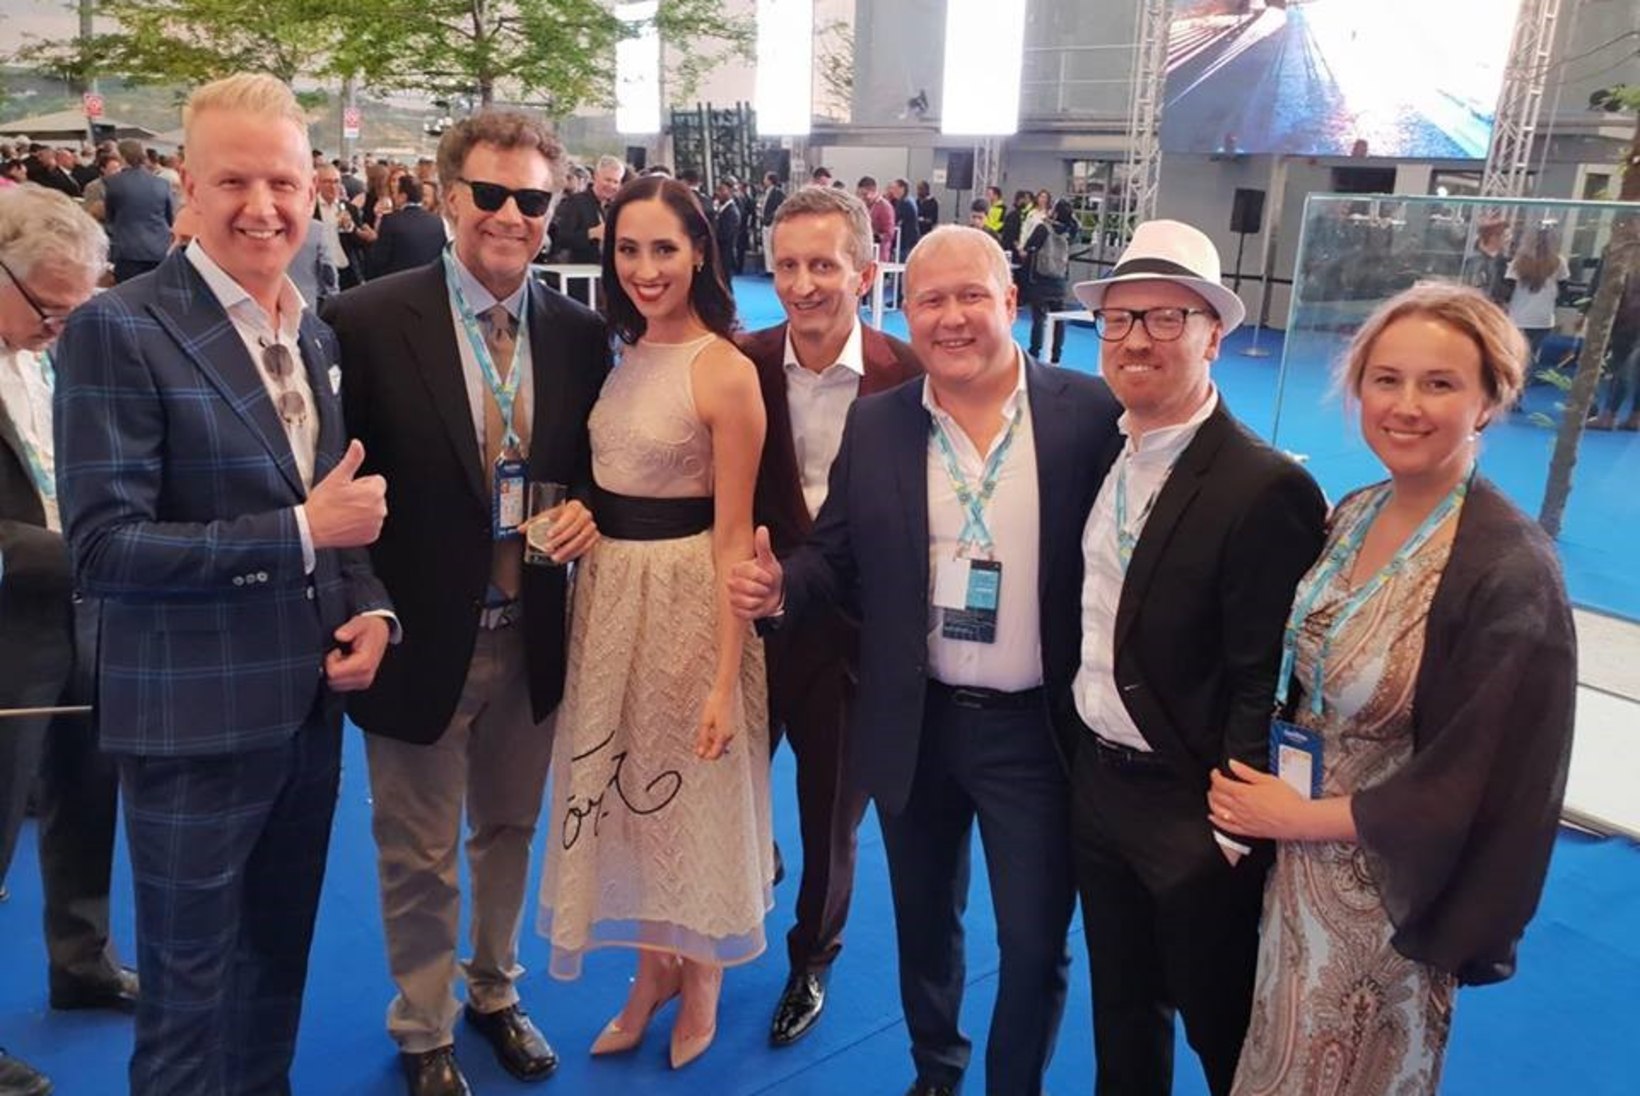 FOTO | Eesti eurodelegatsioon kohtus Lissabonis kuulsa näitleja Will Ferrelliga, kes on suur Eurovisioni fänn